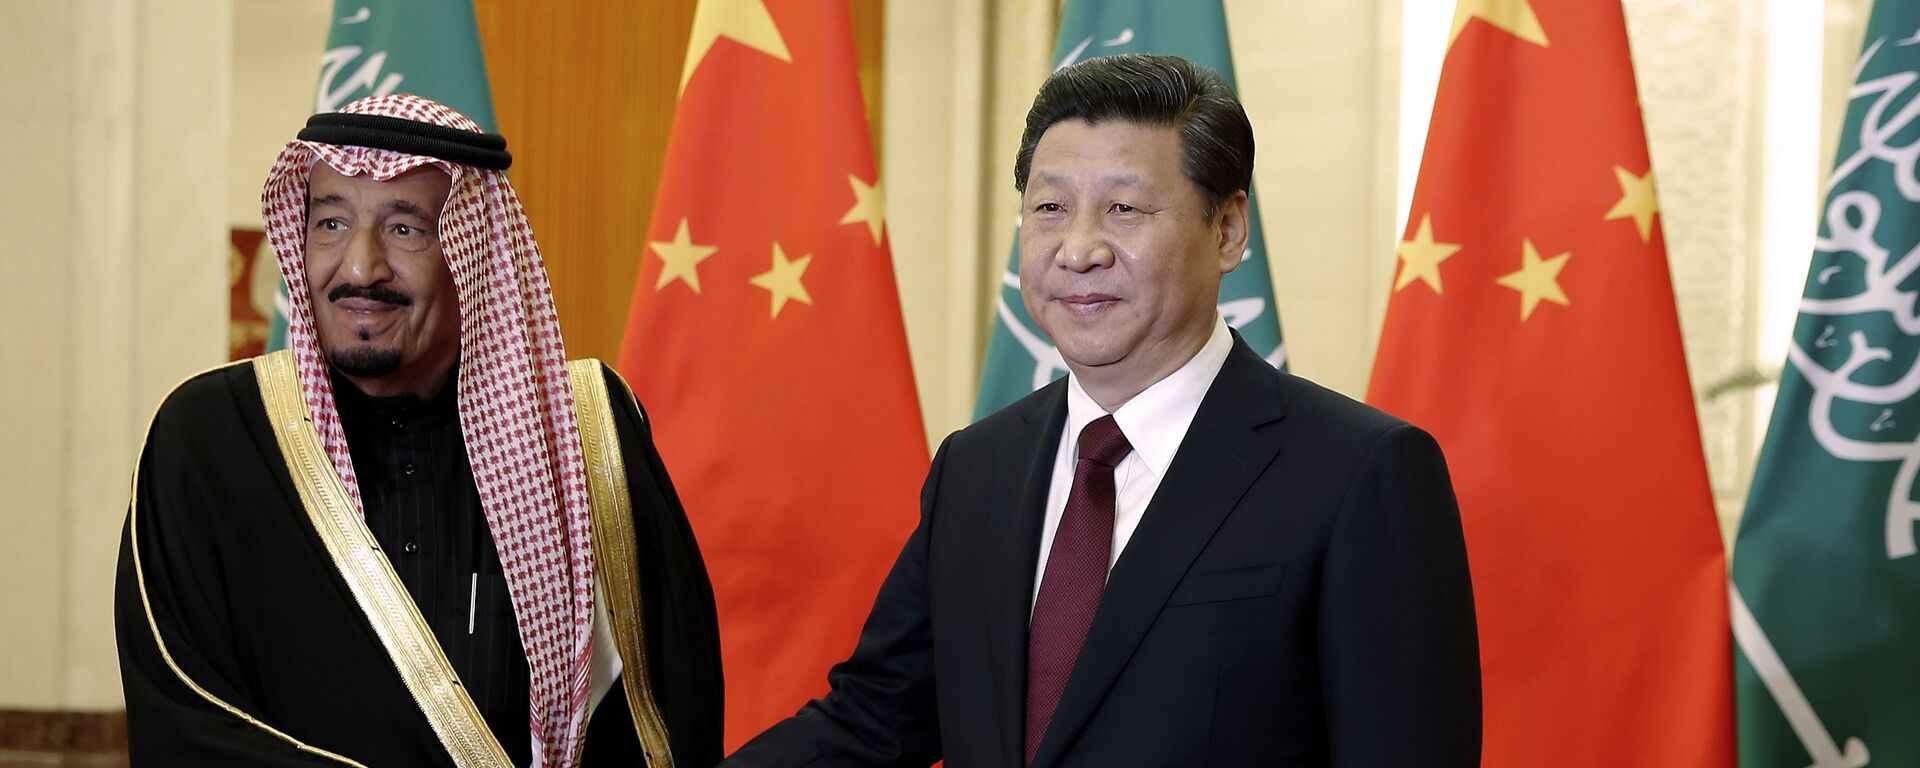 O presidente chinês Xi Jinping (D) aperta a mão do príncipe saudita Salman bin Abdul-Aziz enquanto posam para fotos no Grande Salão do Povo em Pequim, China, 13 de março de 2014 - Sputnik Brasil, 1920, 07.11.2022